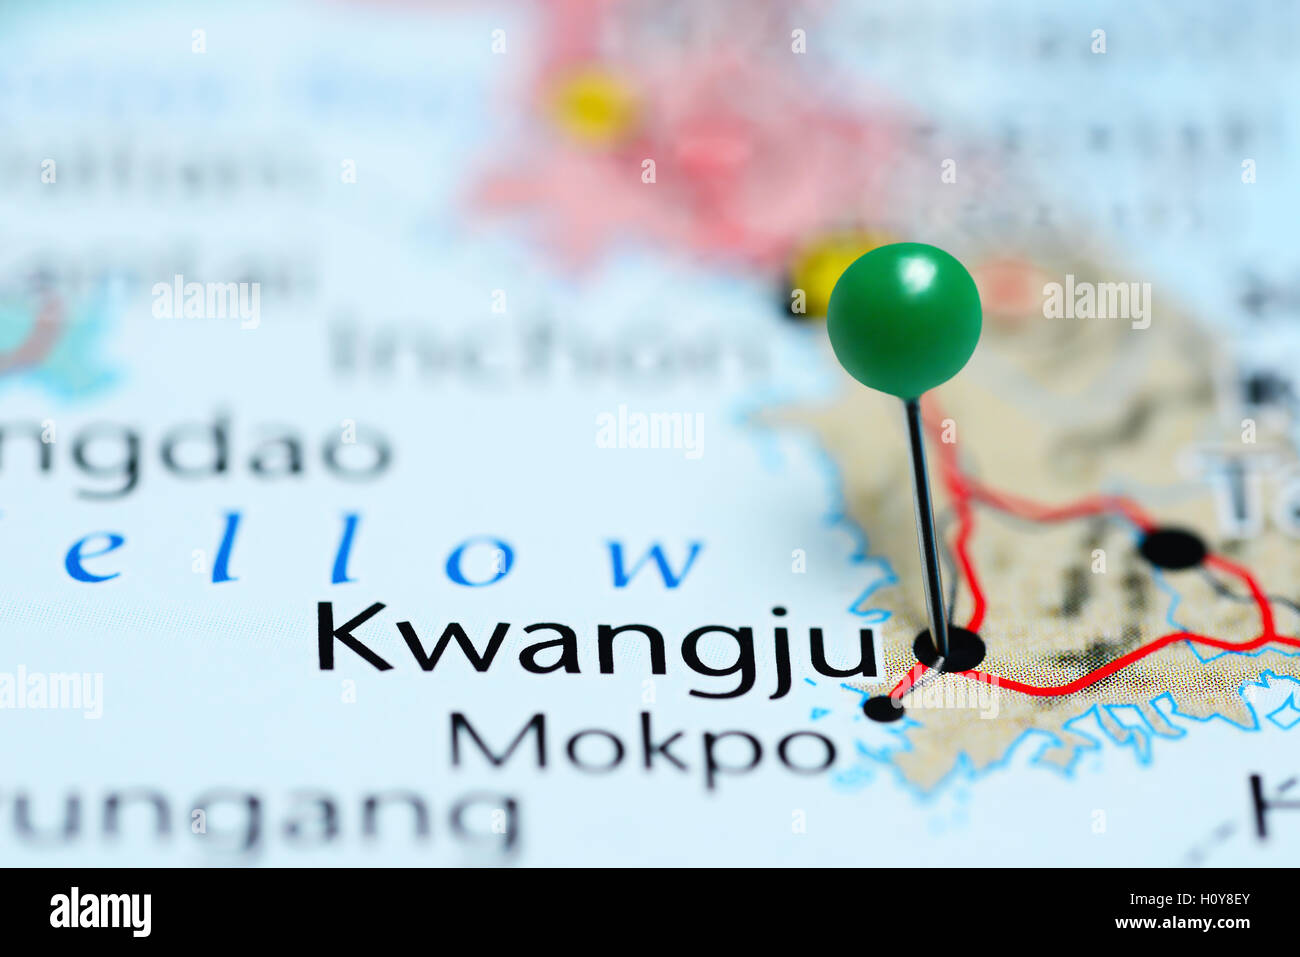 Kwangju pinned on a map of South Korea Stock Photo